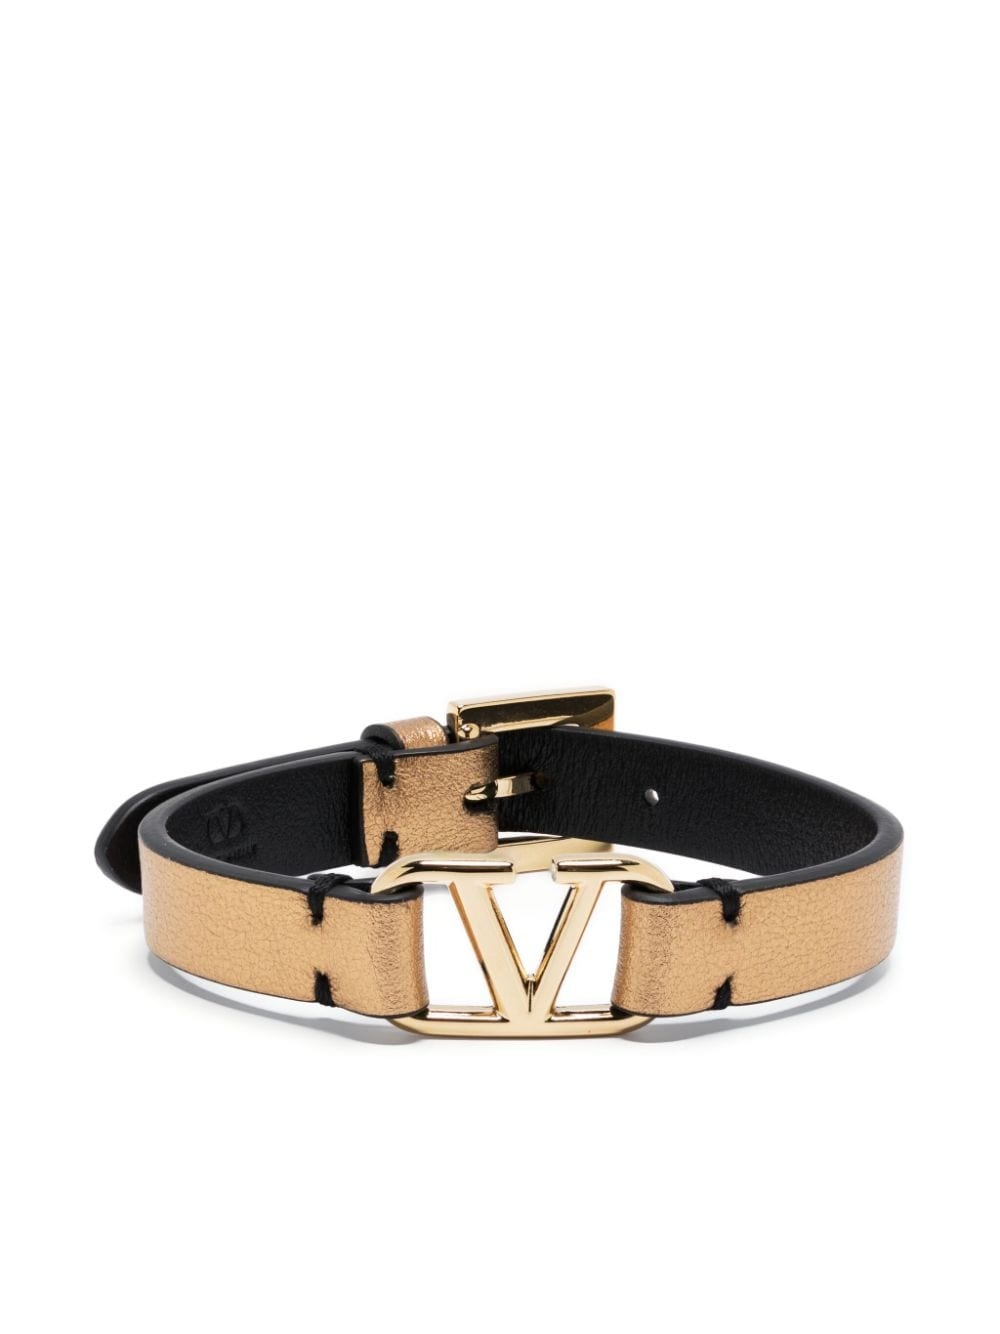 VLogo Signature leather bracelet - 1